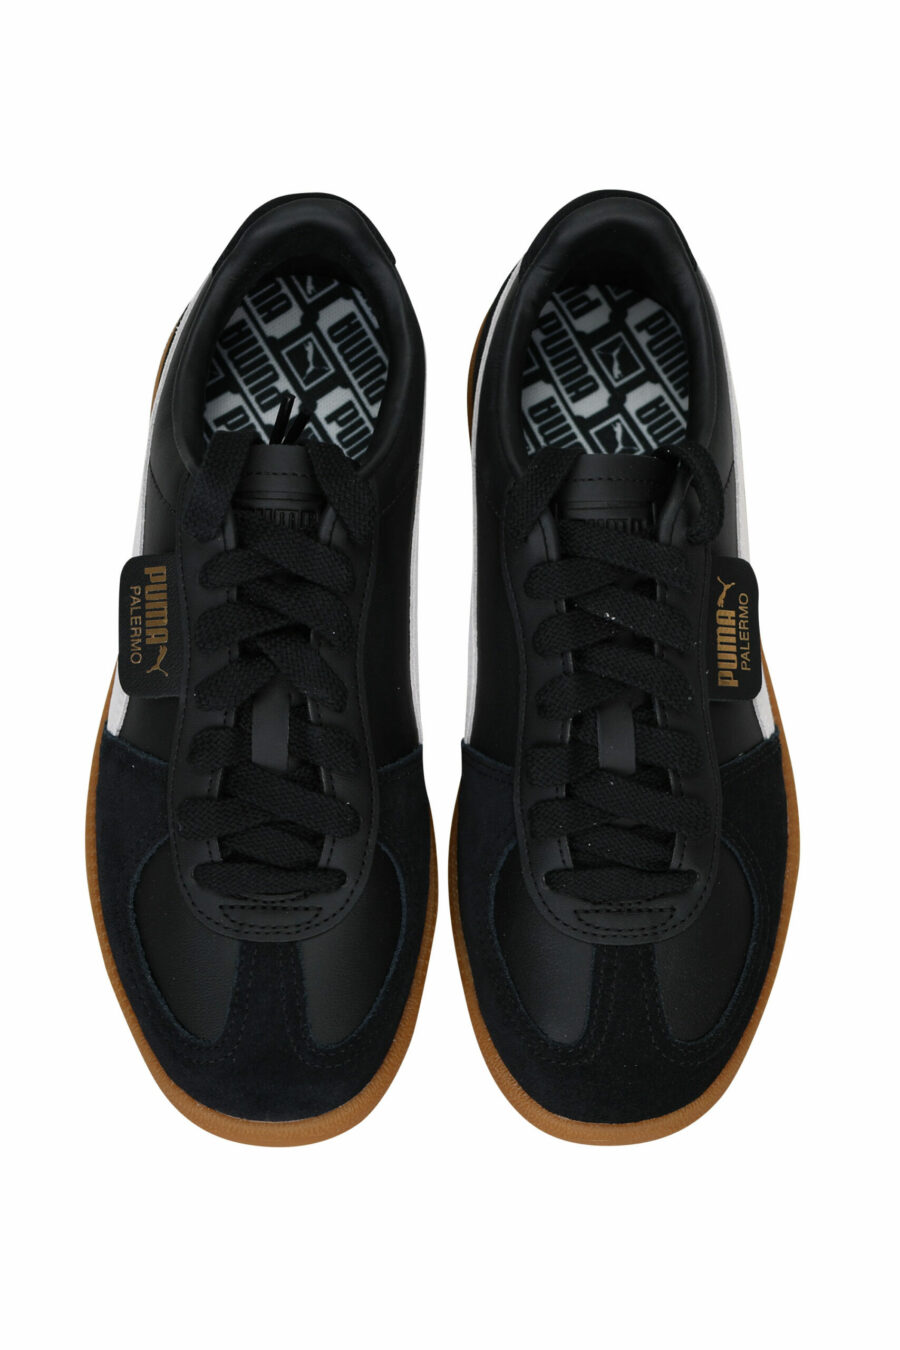 Zapatillas "palermo" negras mix con logo - 4099685704651 4 scaled